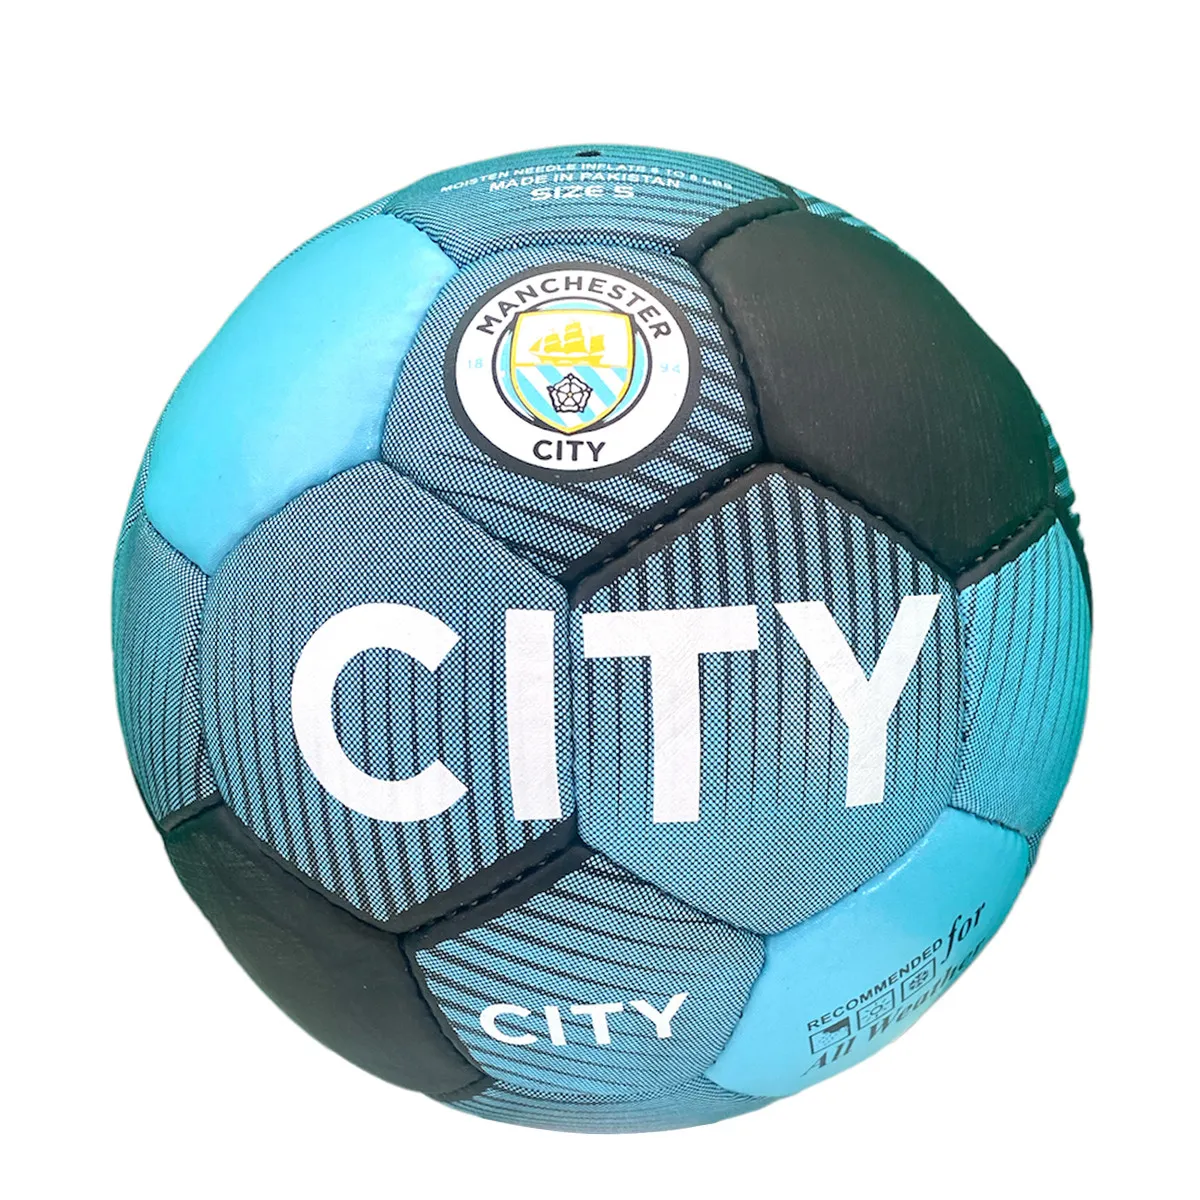 Futbol'nyy myach Manchester City
#1